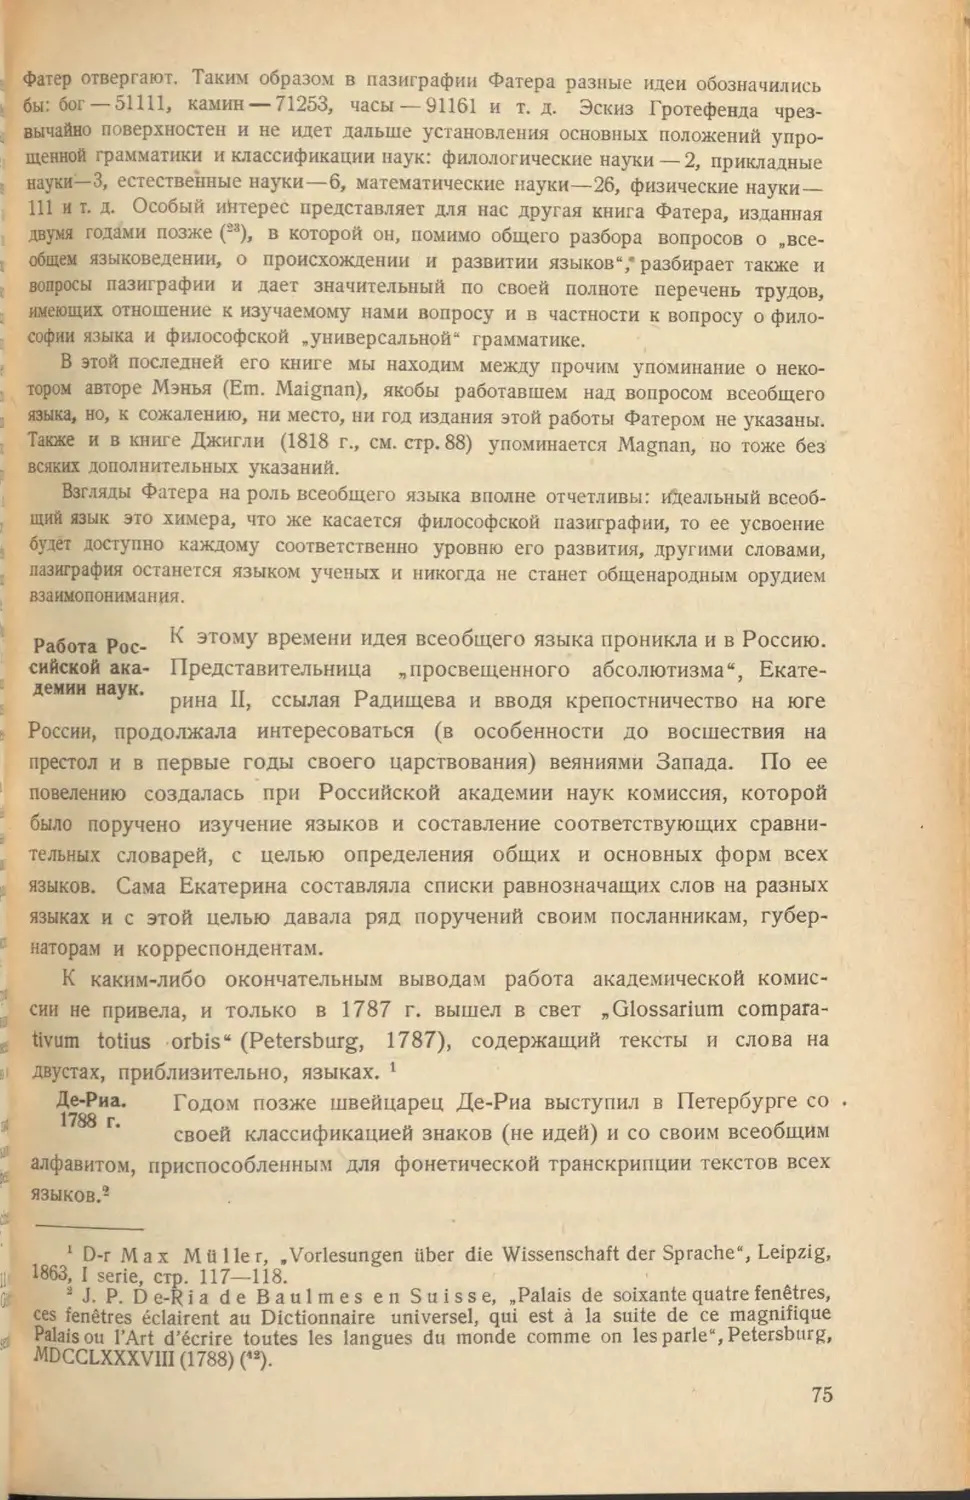 Работа Российской академии наук
Де-Риа. 1788